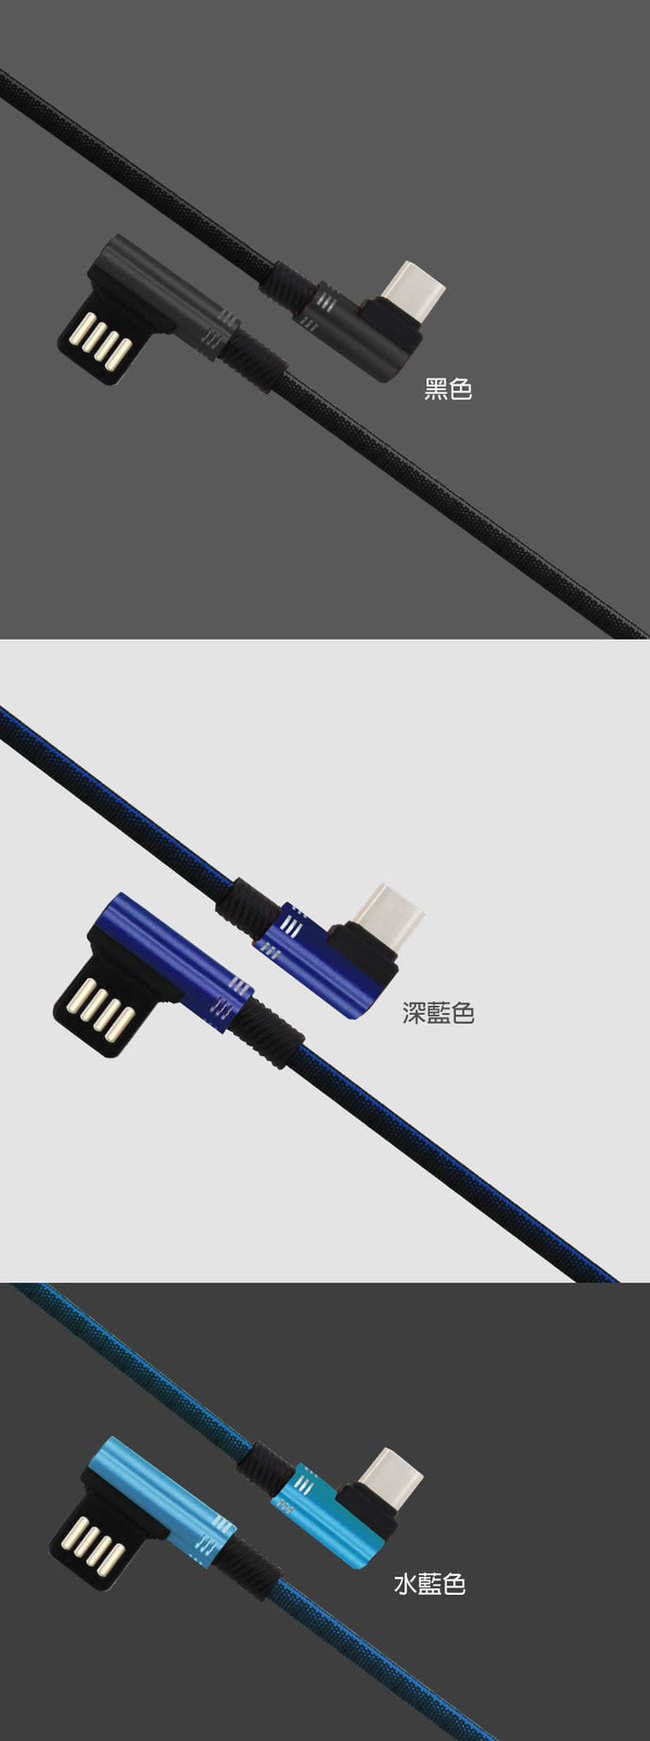 USB正反可插27W雙L型編織充電線 (Type-C/1m)